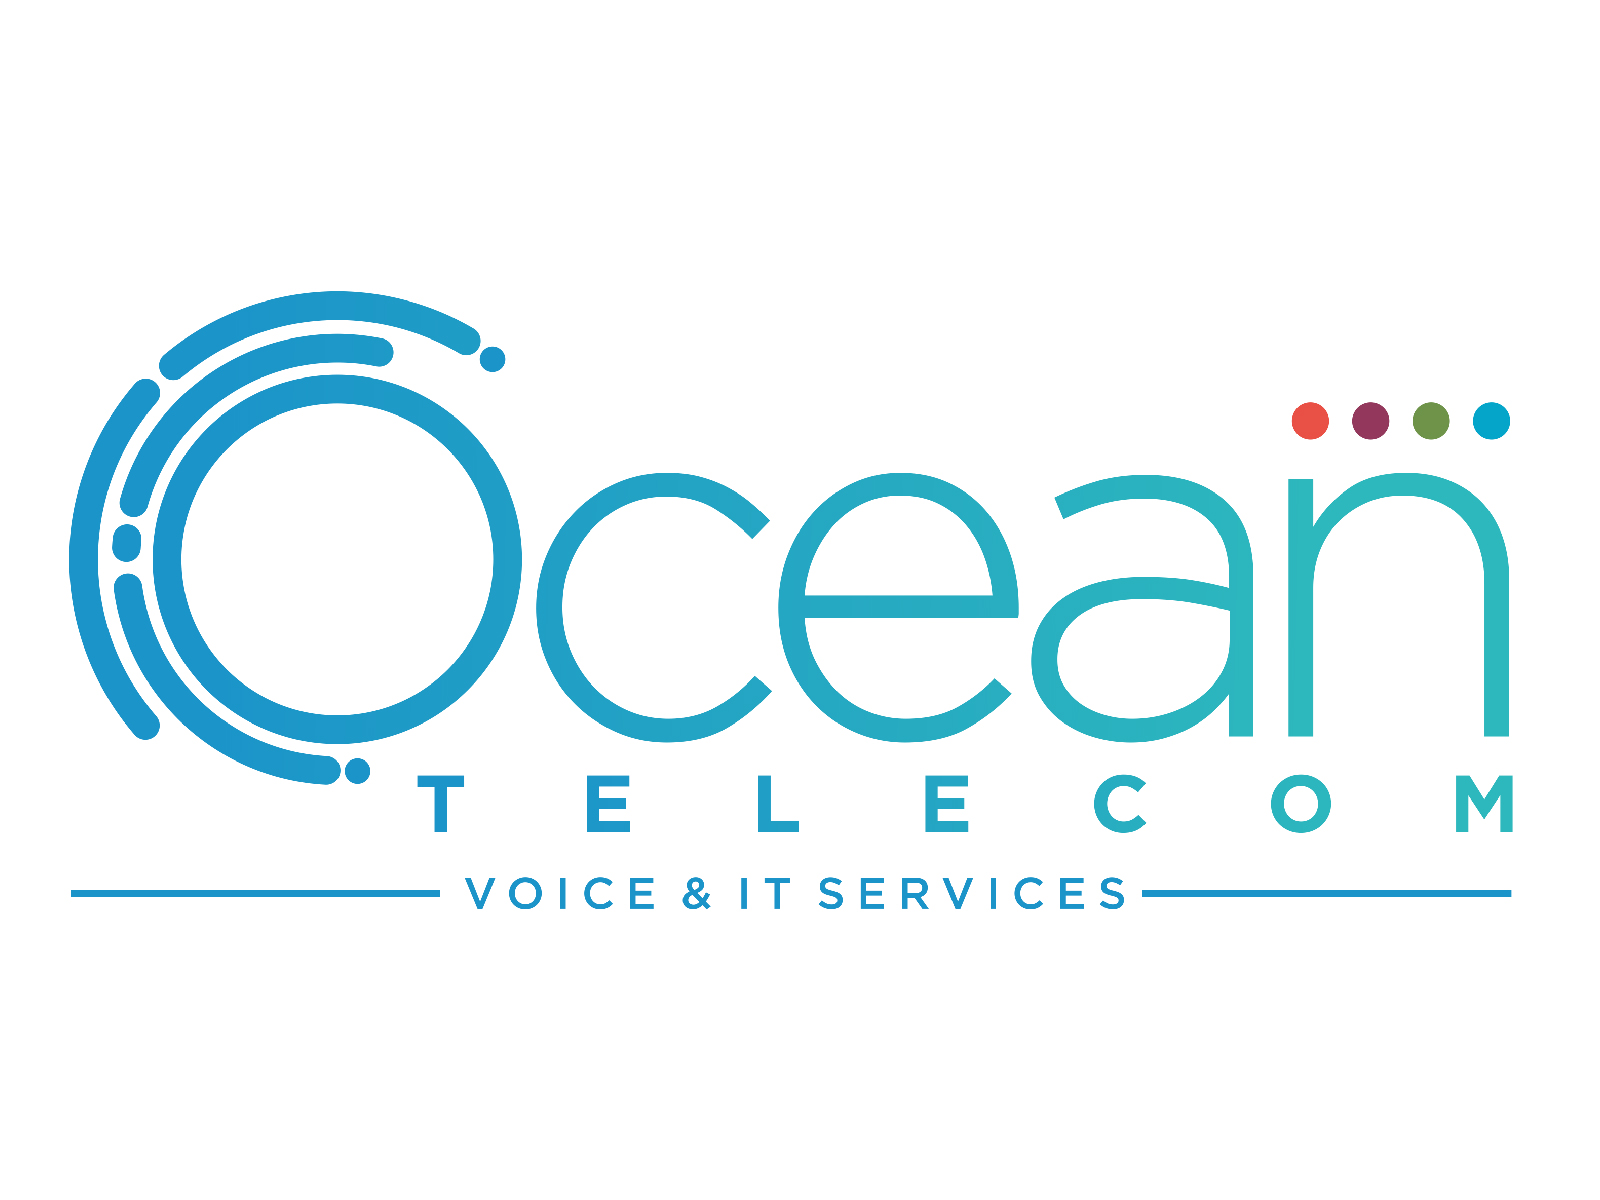 Ocean Telecom